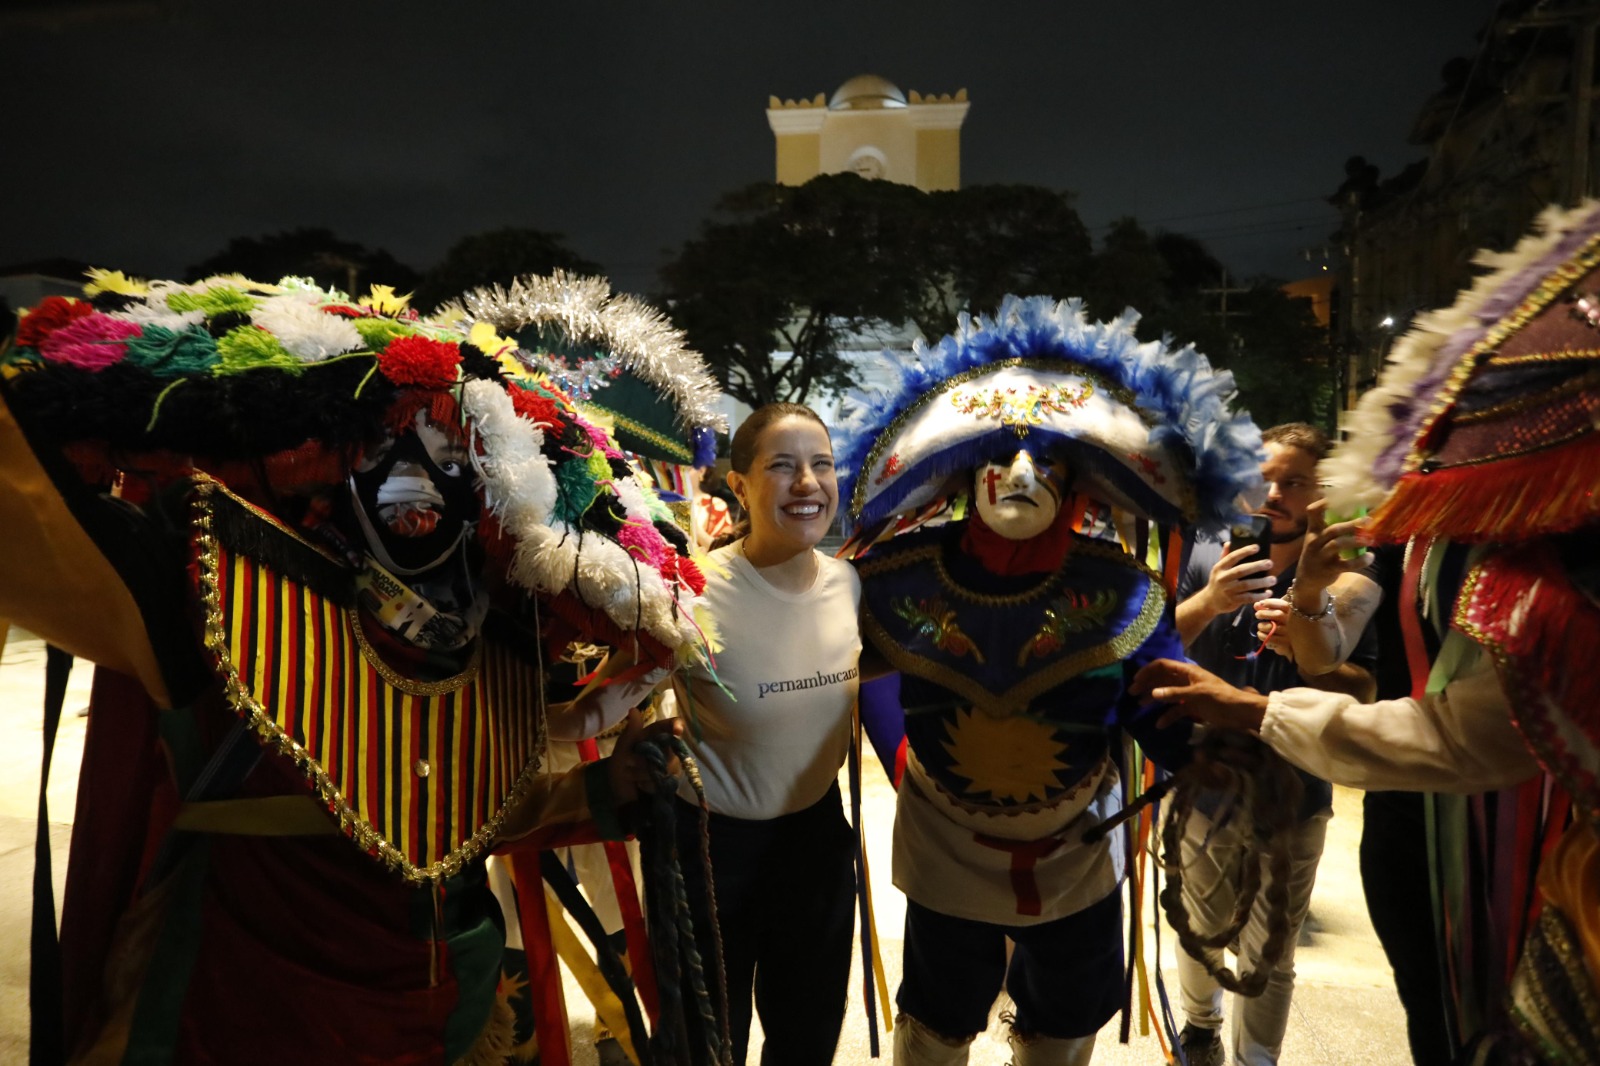  Governadora Raquel Lyra Divulga Programação do Festival “Pernambuco Meu País” com Quase 900 Ações Culturais